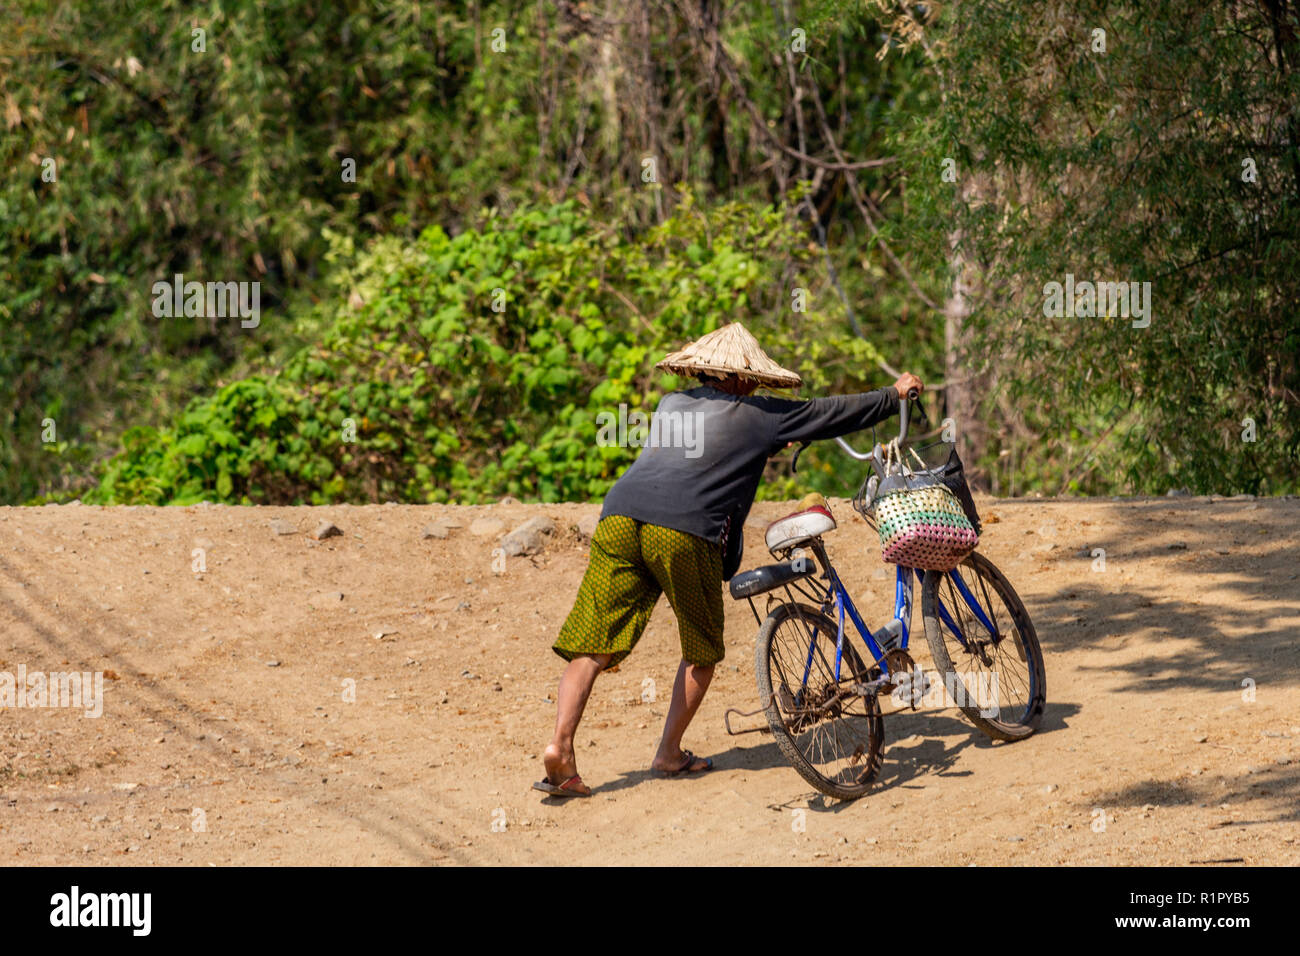 Don Det, Laos - Aprile 22, 2018: Locale uomo in possesso di una bicicletta in una remota zona rurale del sud Laos vicino al confine cambogiano Foto Stock